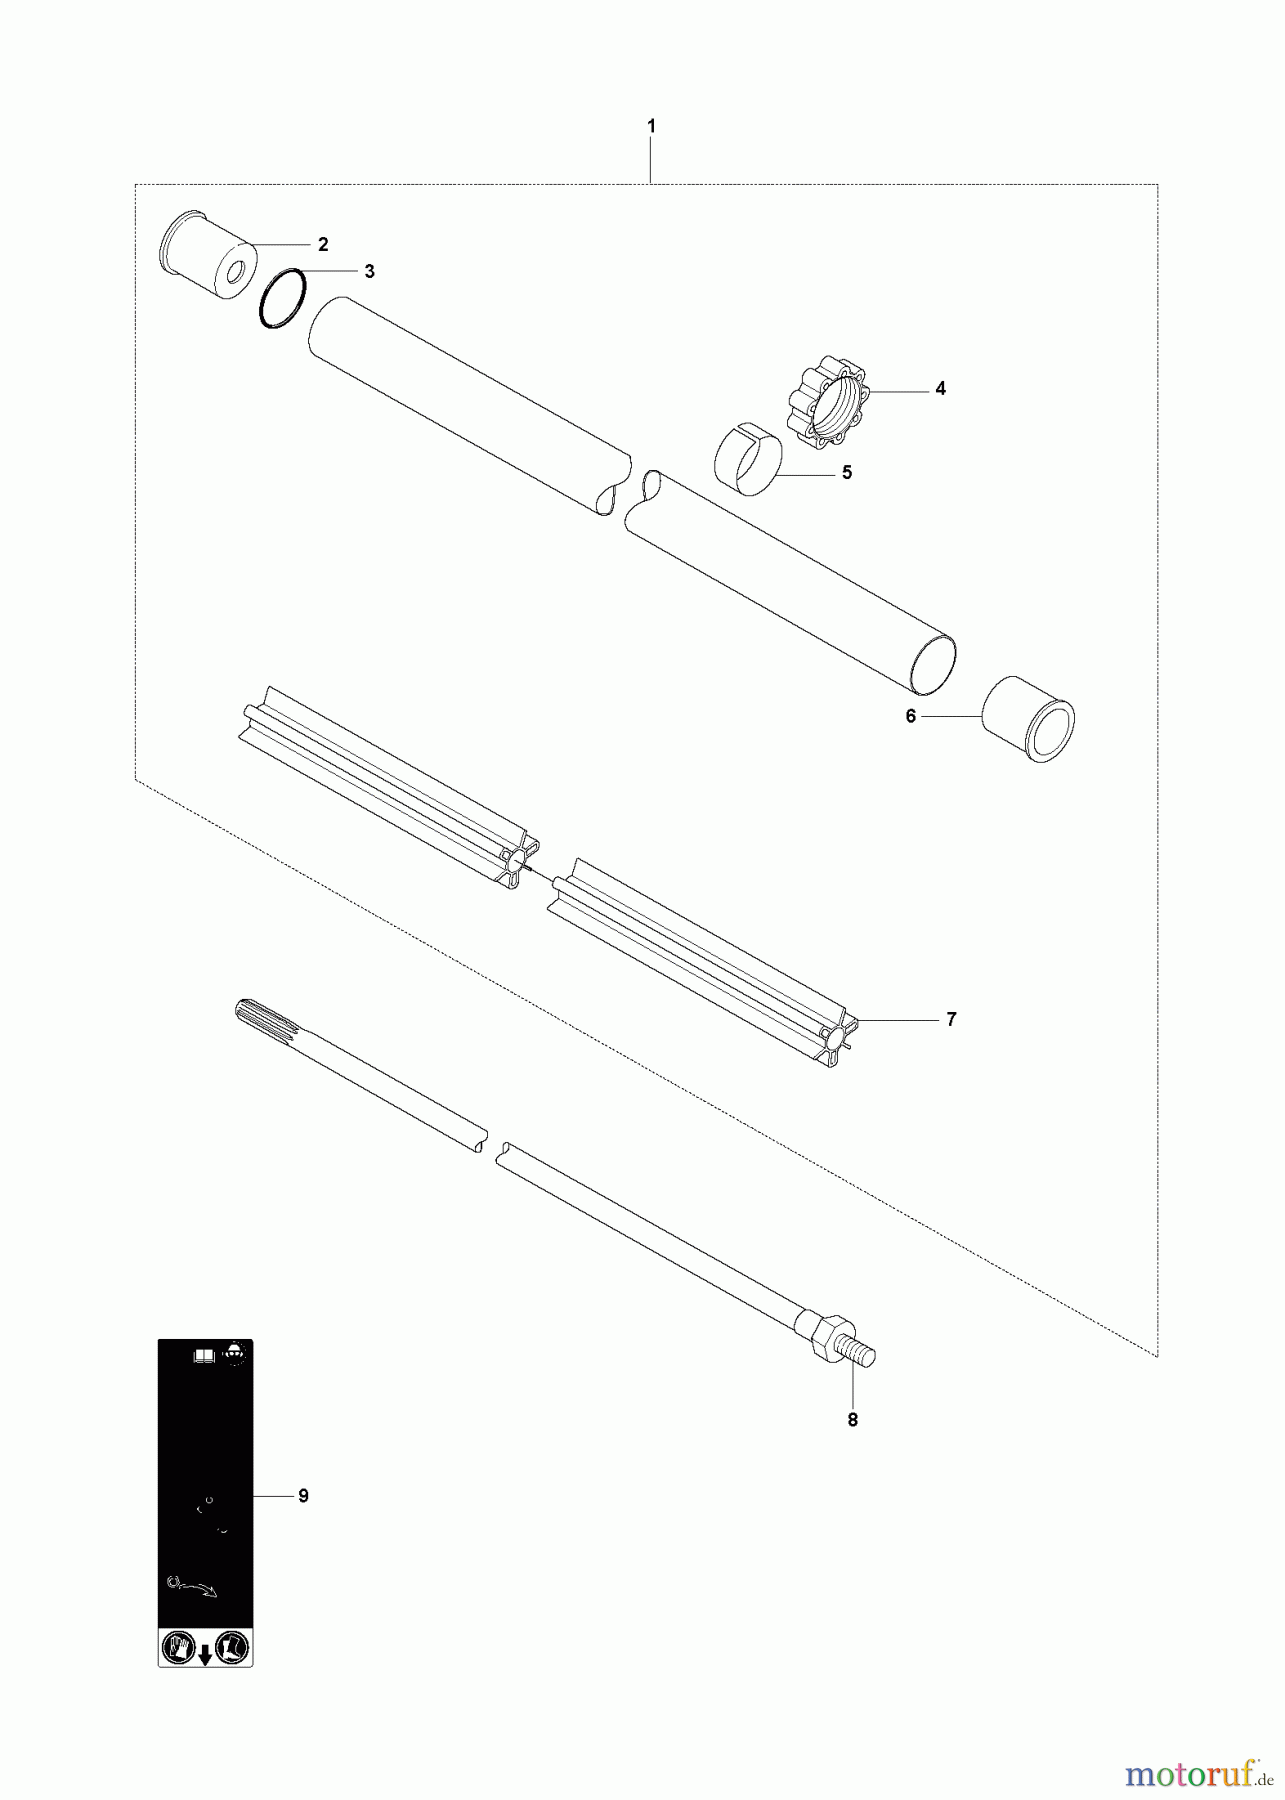  Jonsered Motorsensen, Trimmer FC2145S - Jonsered String/Brush Trimmer (2008-05) SHAFT